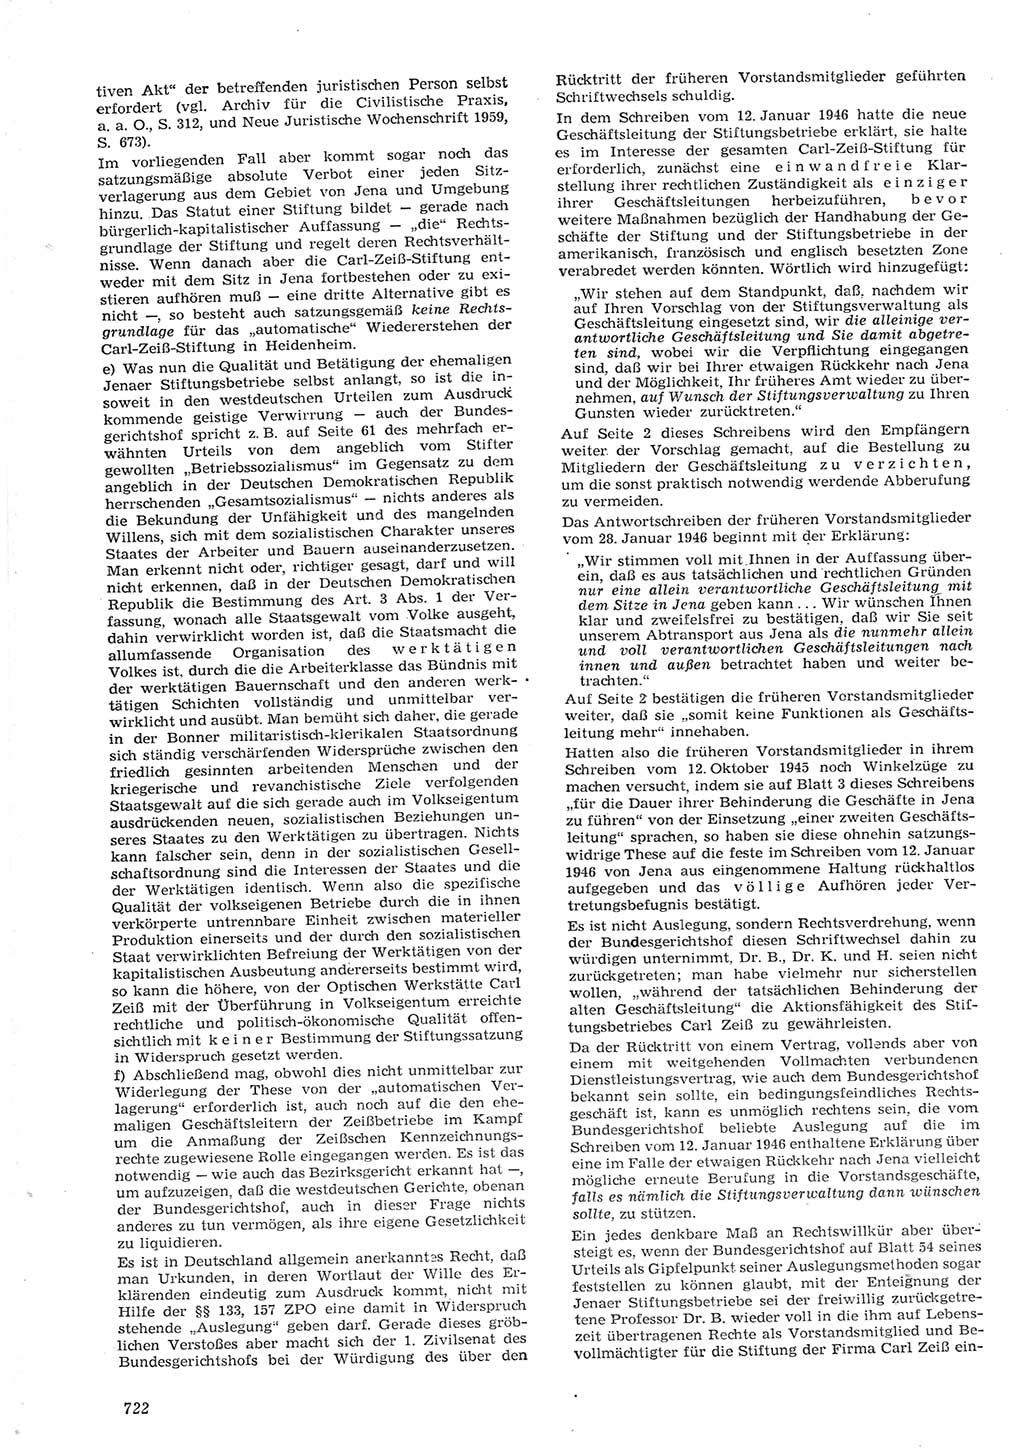 Neue Justiz (NJ), Zeitschrift für Recht und Rechtswissenschaft [Deutsche Demokratische Republik (DDR)], 15. Jahrgang 1961, Seite 722 (NJ DDR 1961, S. 722)